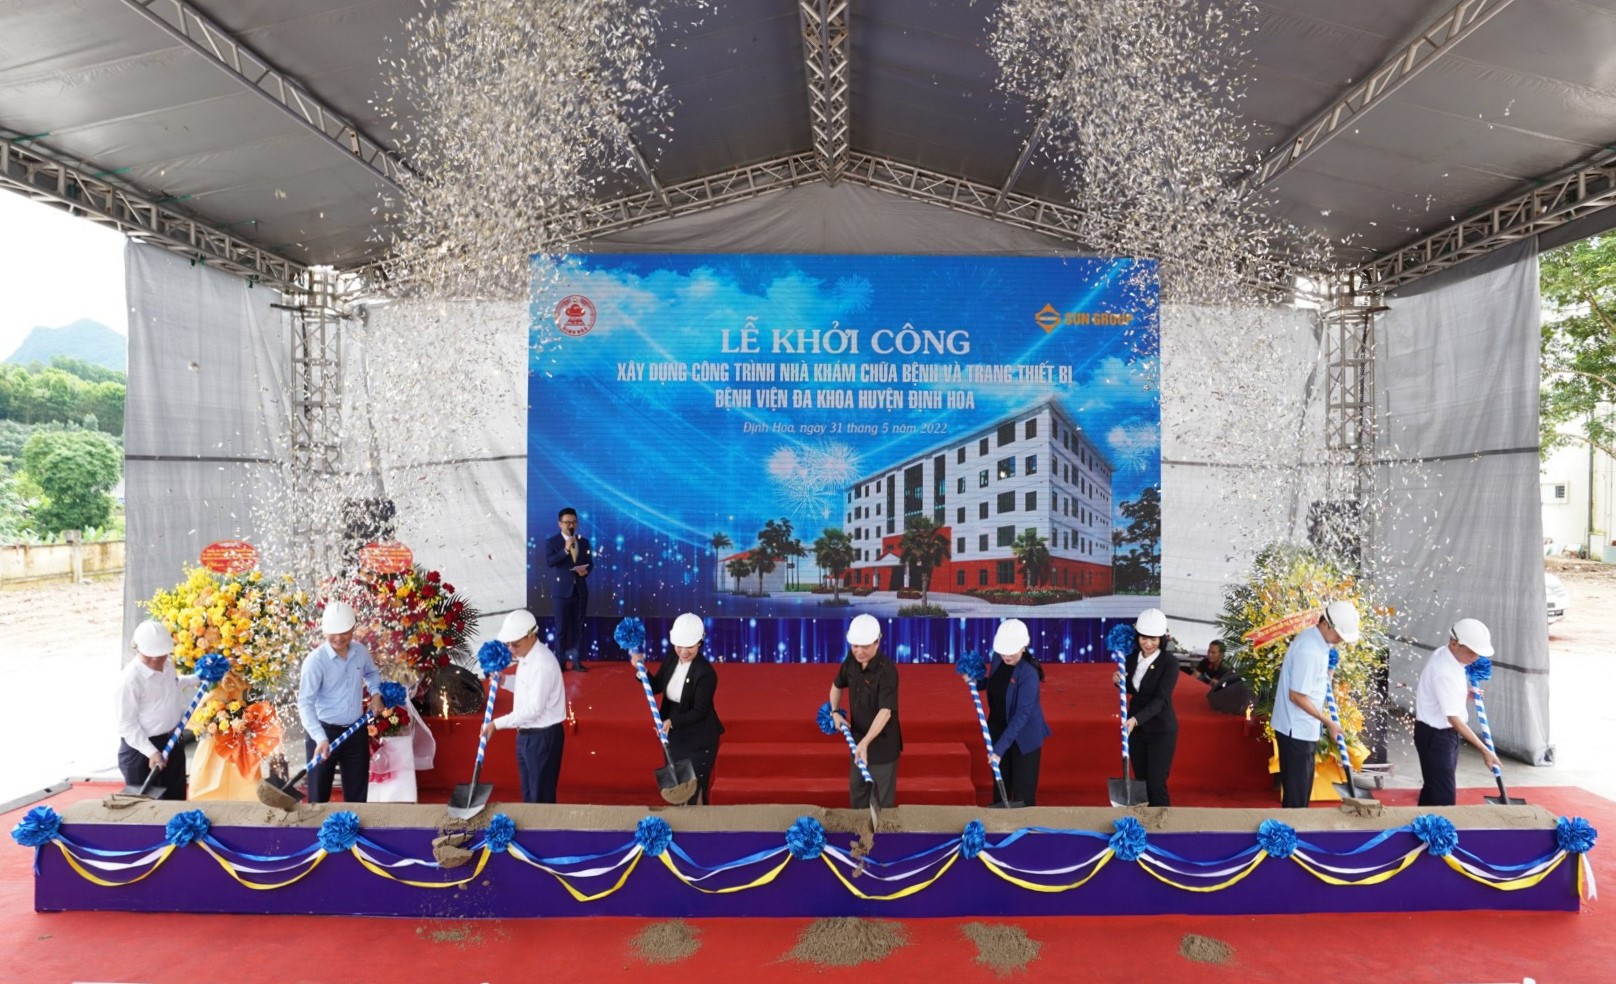 Nghi thức động thổ công trình Nhà khám chữa bệnh Bệnh viện Đa khoa huyện Định Hóa.